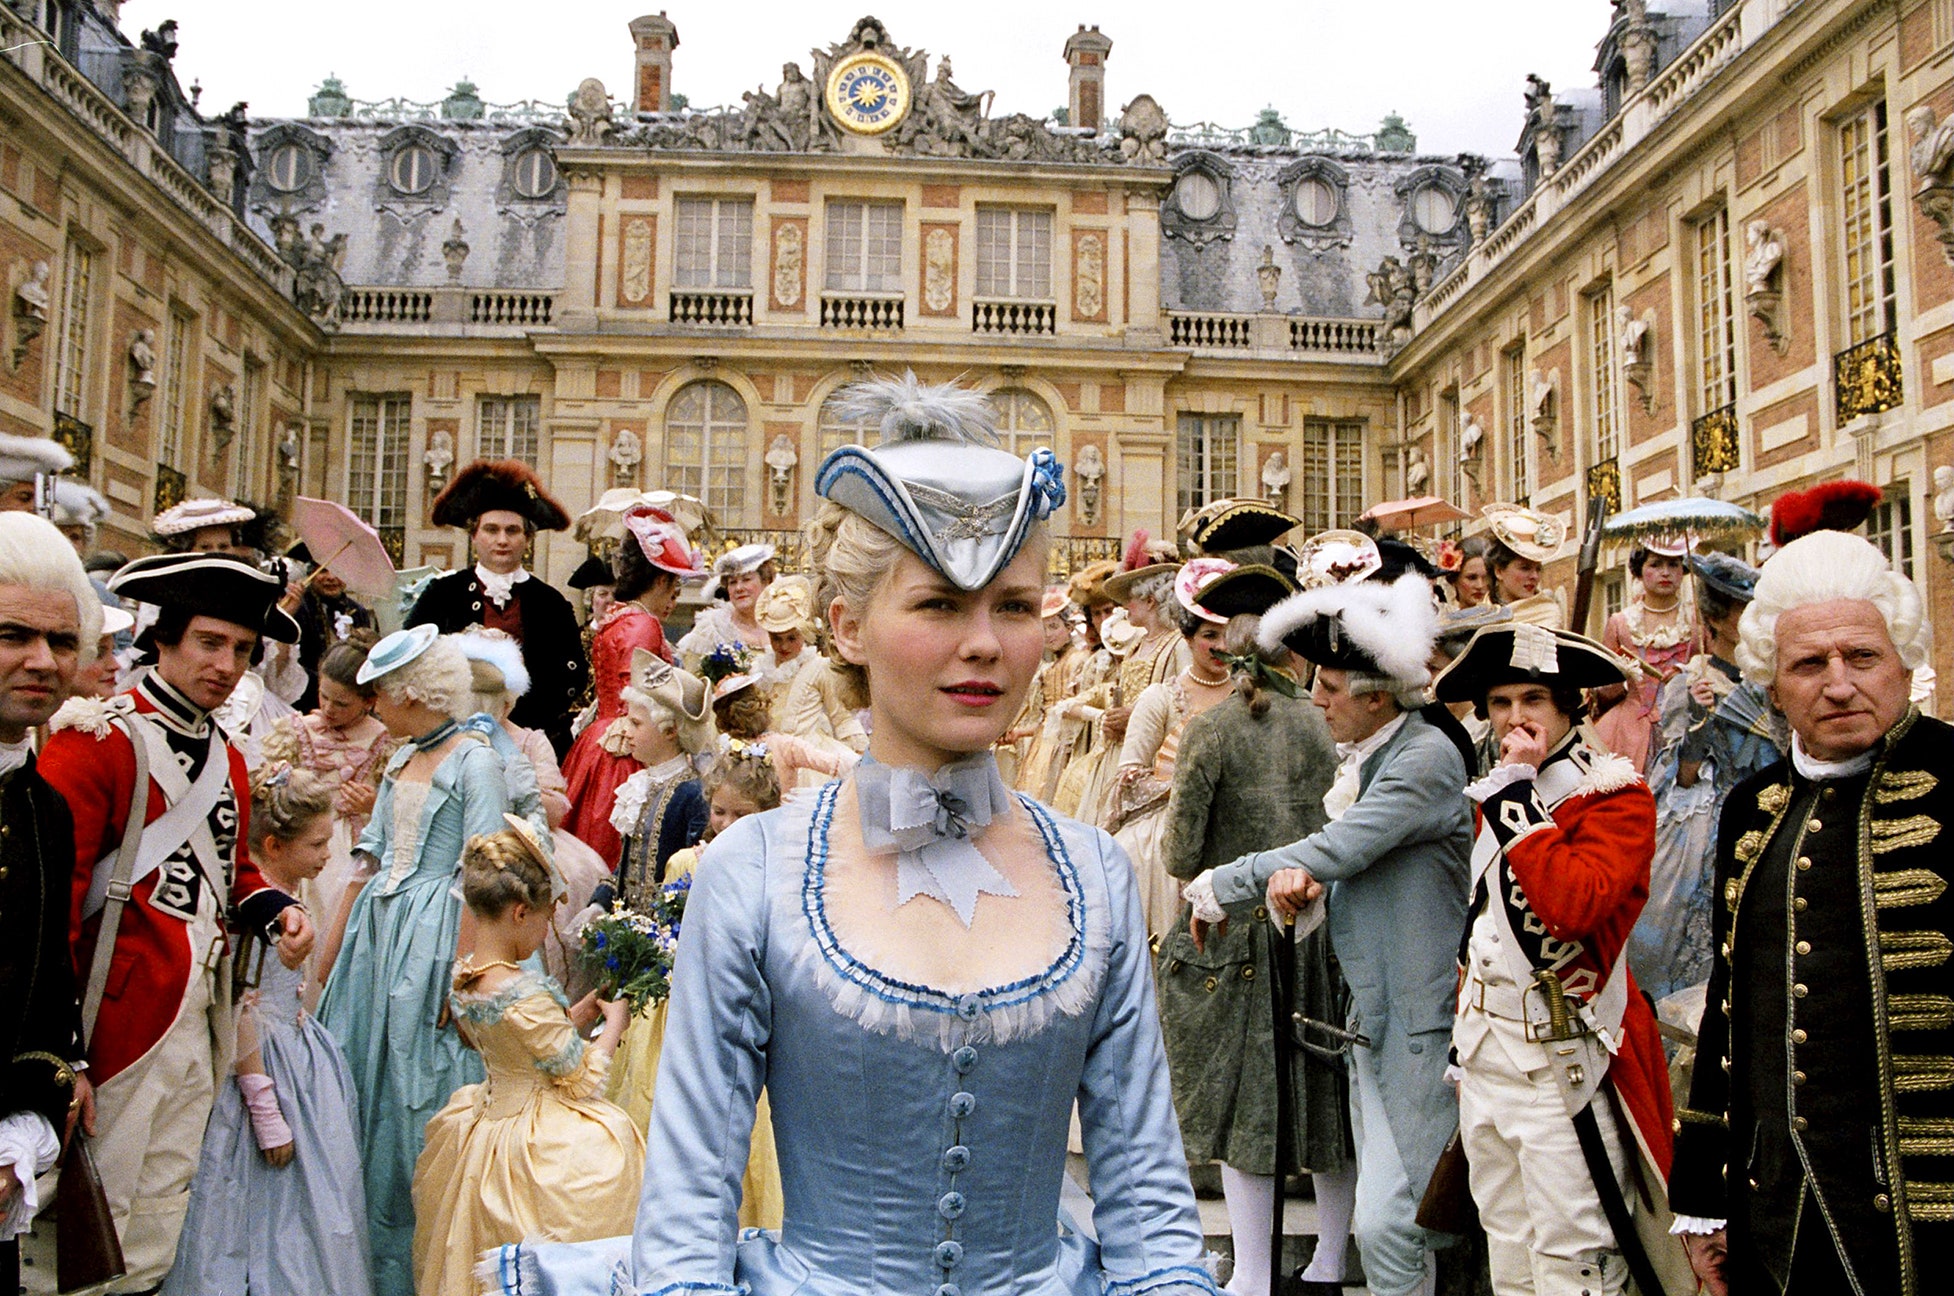 Cena do momento em que Maria Antonieta chega a Versalhes. Ela usa um traje azul claro, que contrasta com as roupas majoritariamente escuras da multidão que a cerca. Todos estão fora do palácio, cercados pela construção como se estivessem em um pátio.